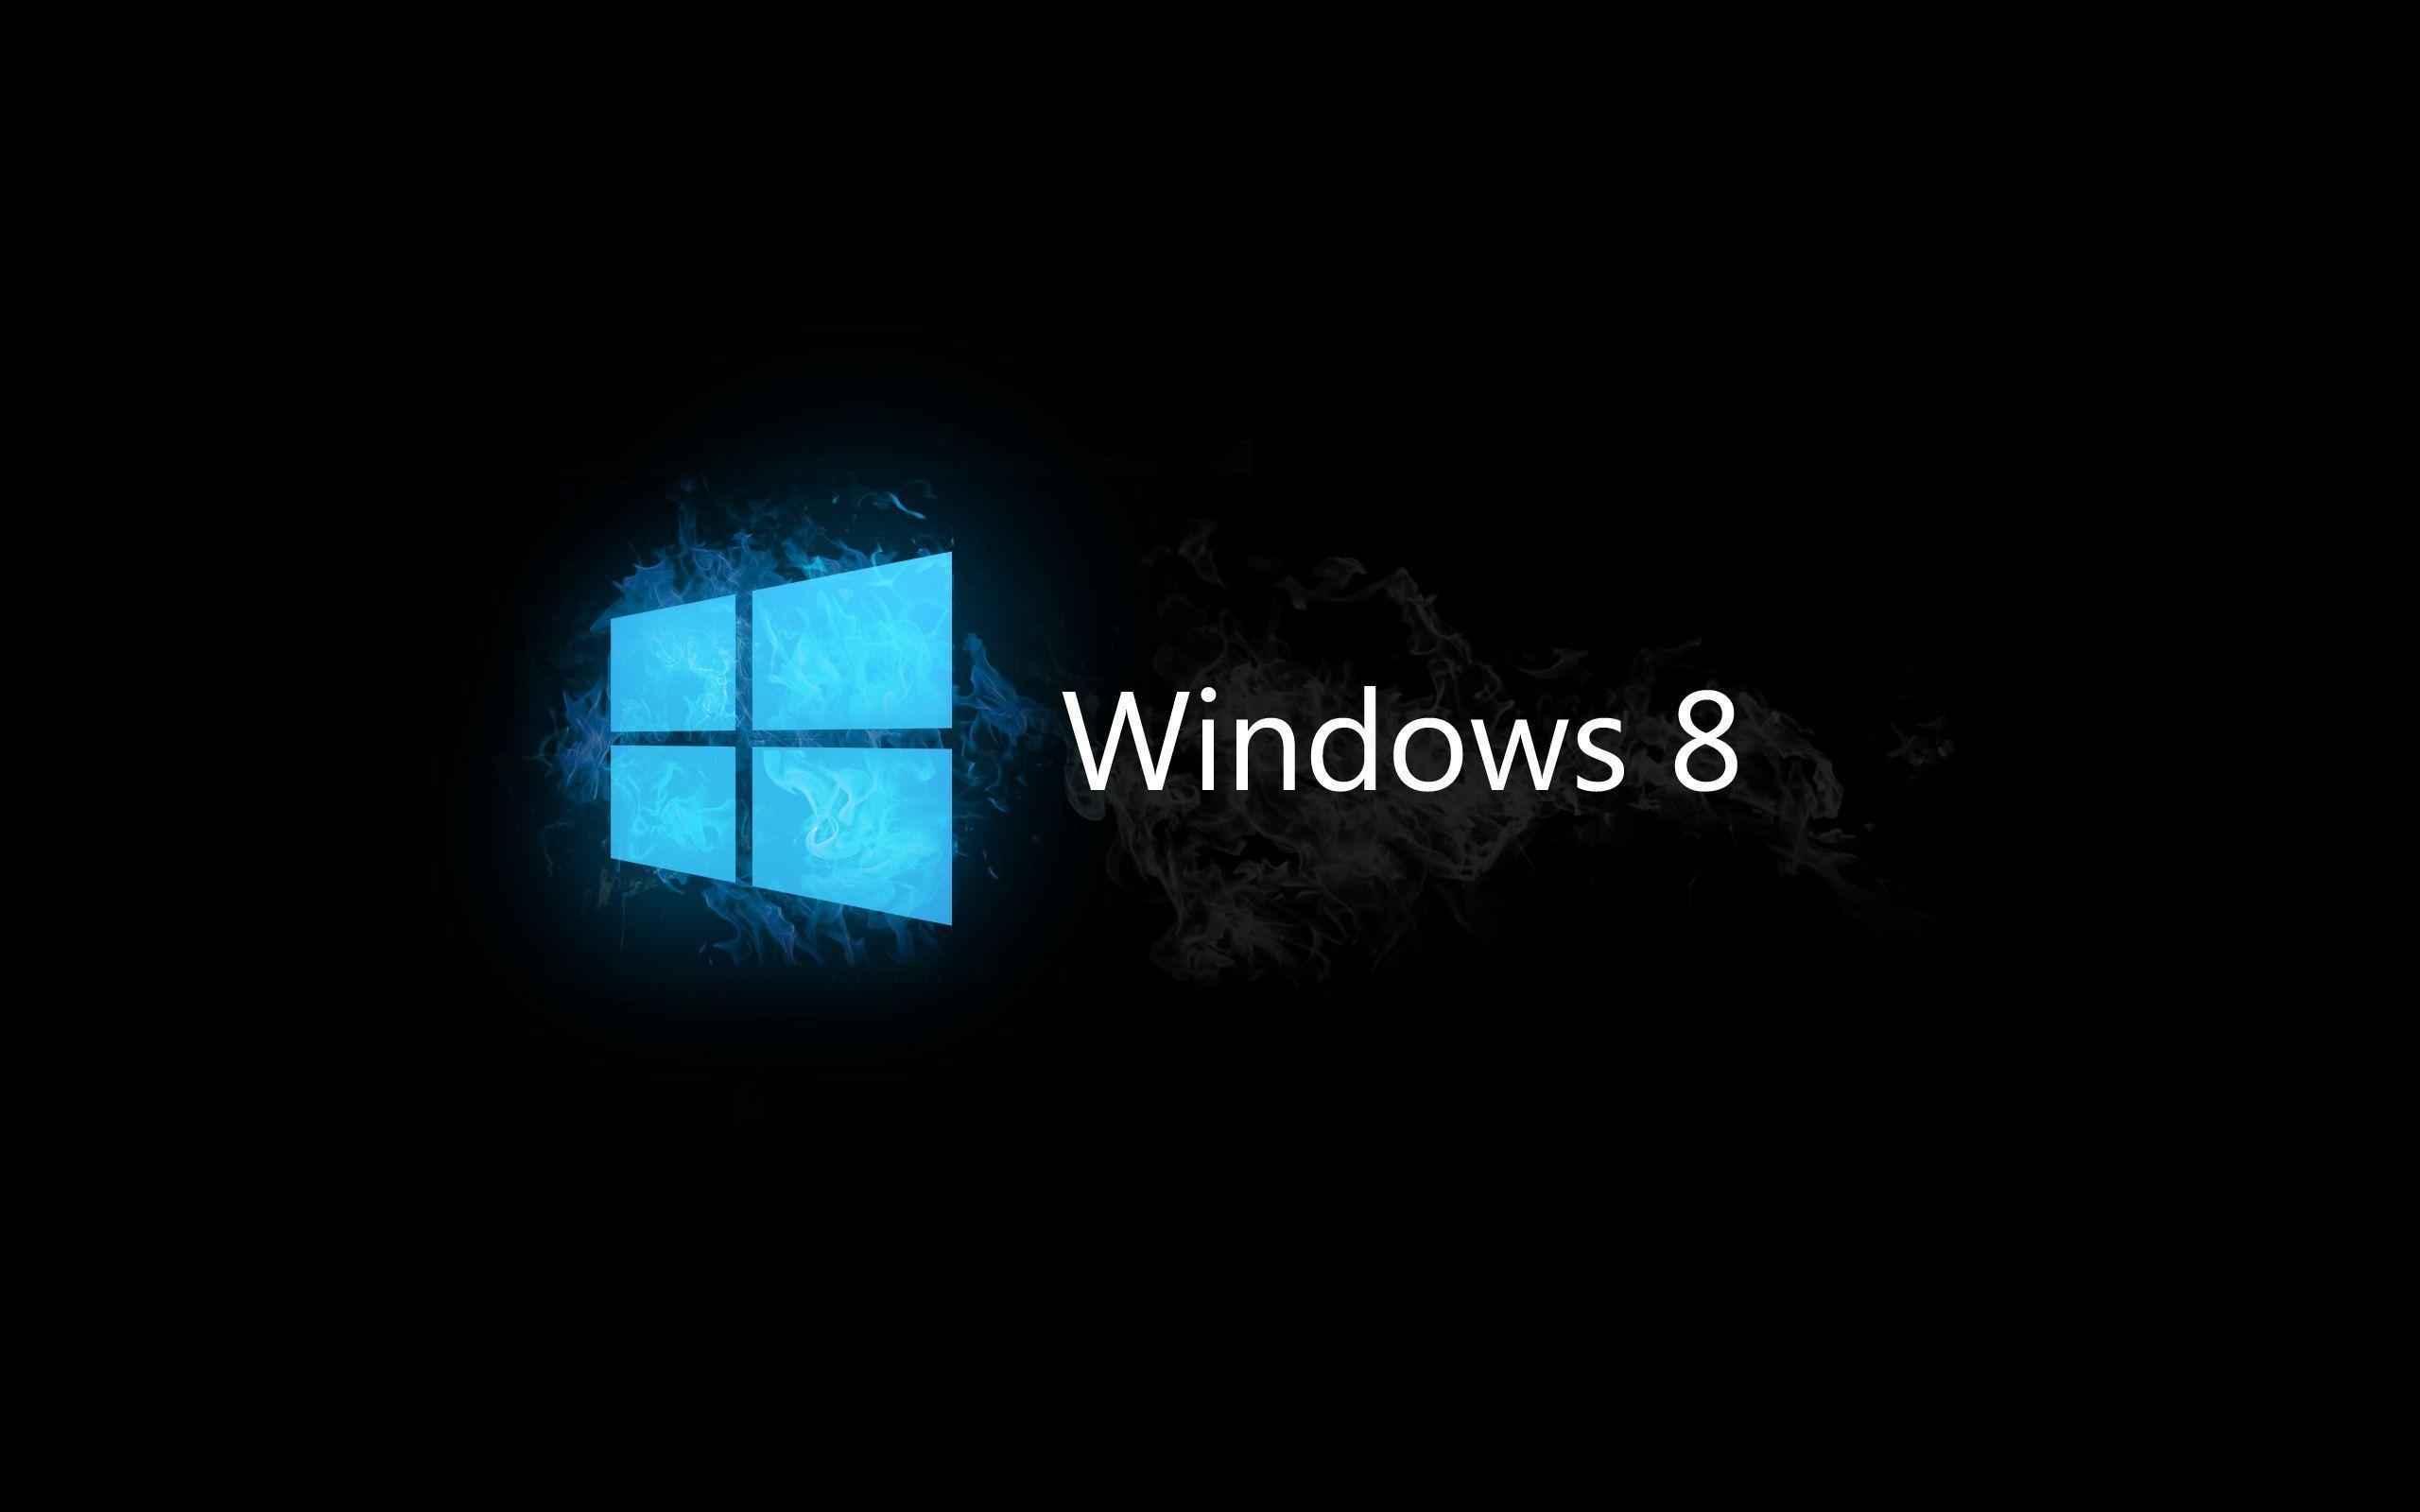 Windows 8 Official Logo Widescreen 2 HD Wallpaper. Hdwalljoy